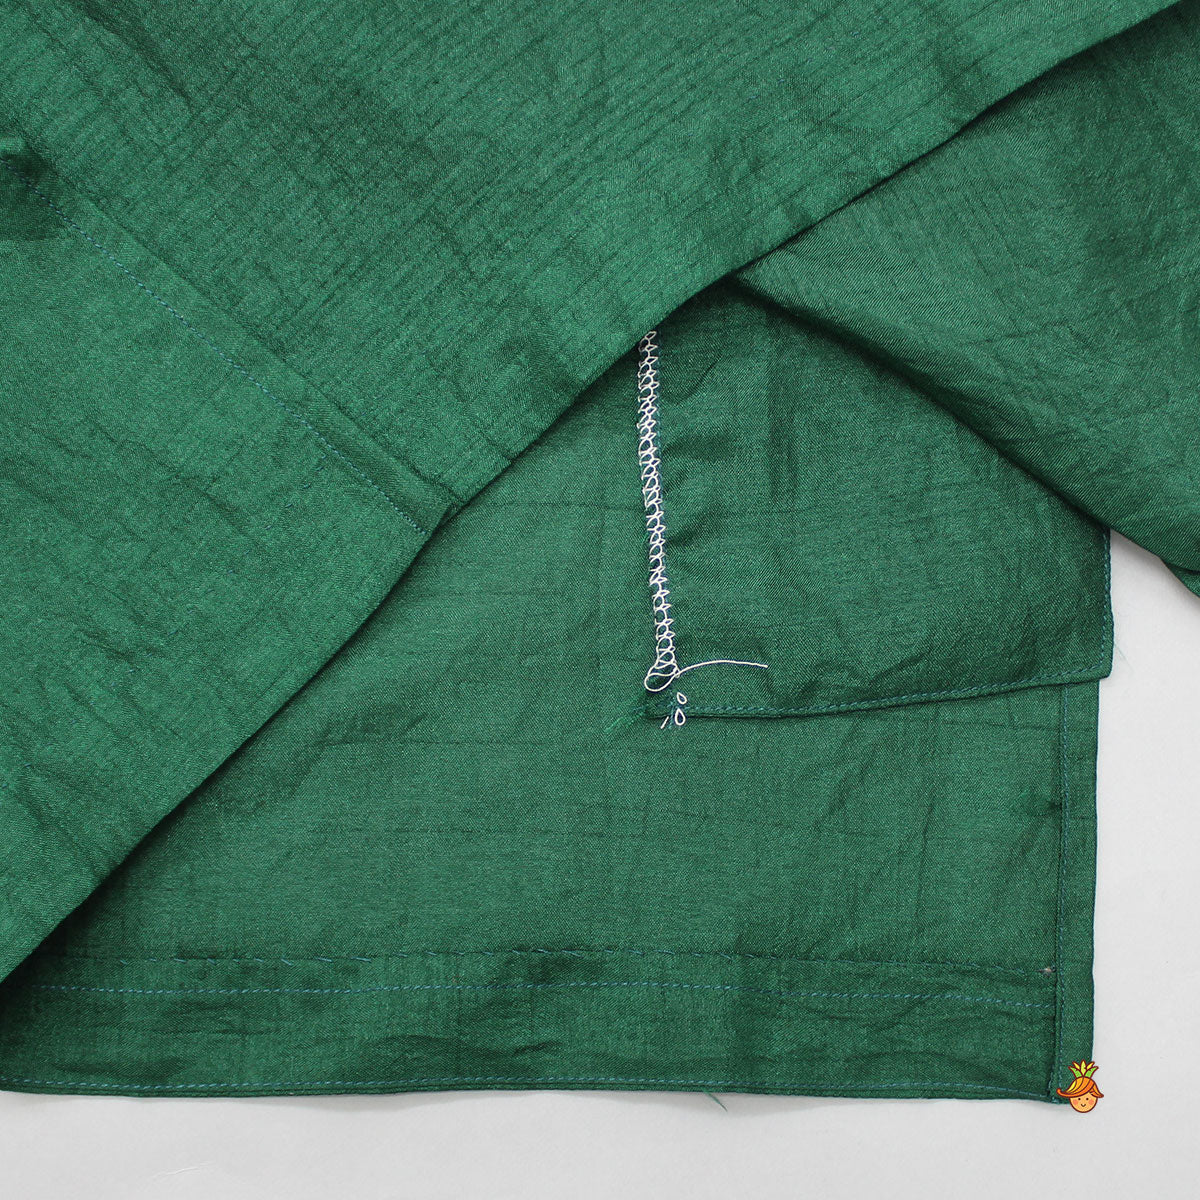 Ethnic Gota Lace Detailed Green Kurta And Jacket With Pyjama